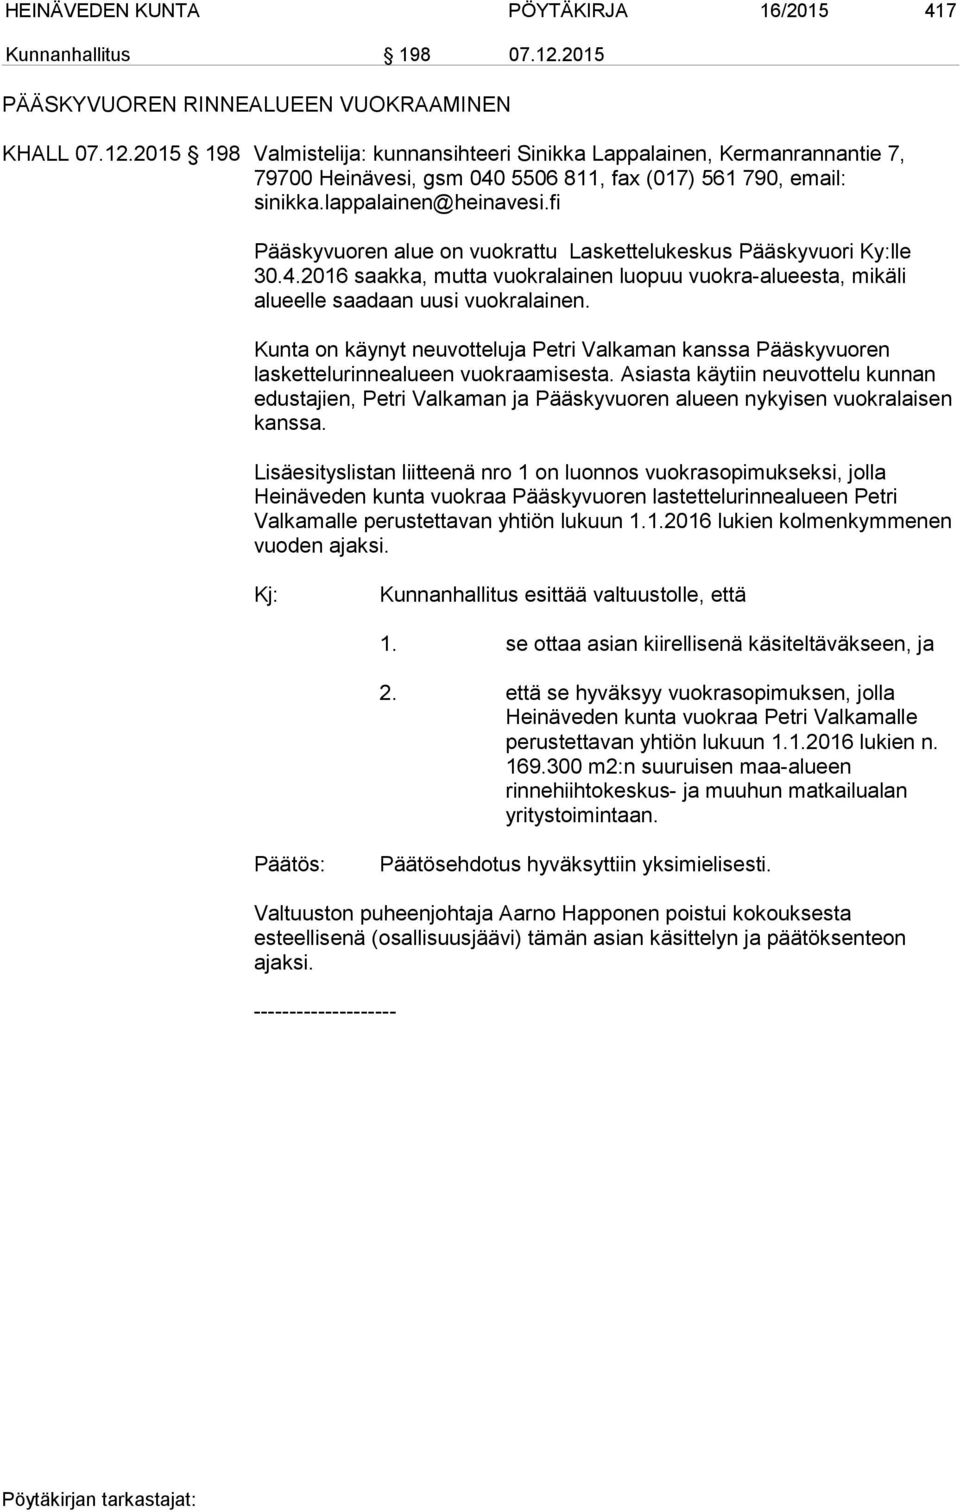 2015 198 Valmistelija: kunnansihteeri Sinikka Lappalainen, Kermanrannantie 7, 79700 Heinävesi, gsm 040 5506 811, fax (017) 561 790, email: sinikka.lappalainen@heinavesi.